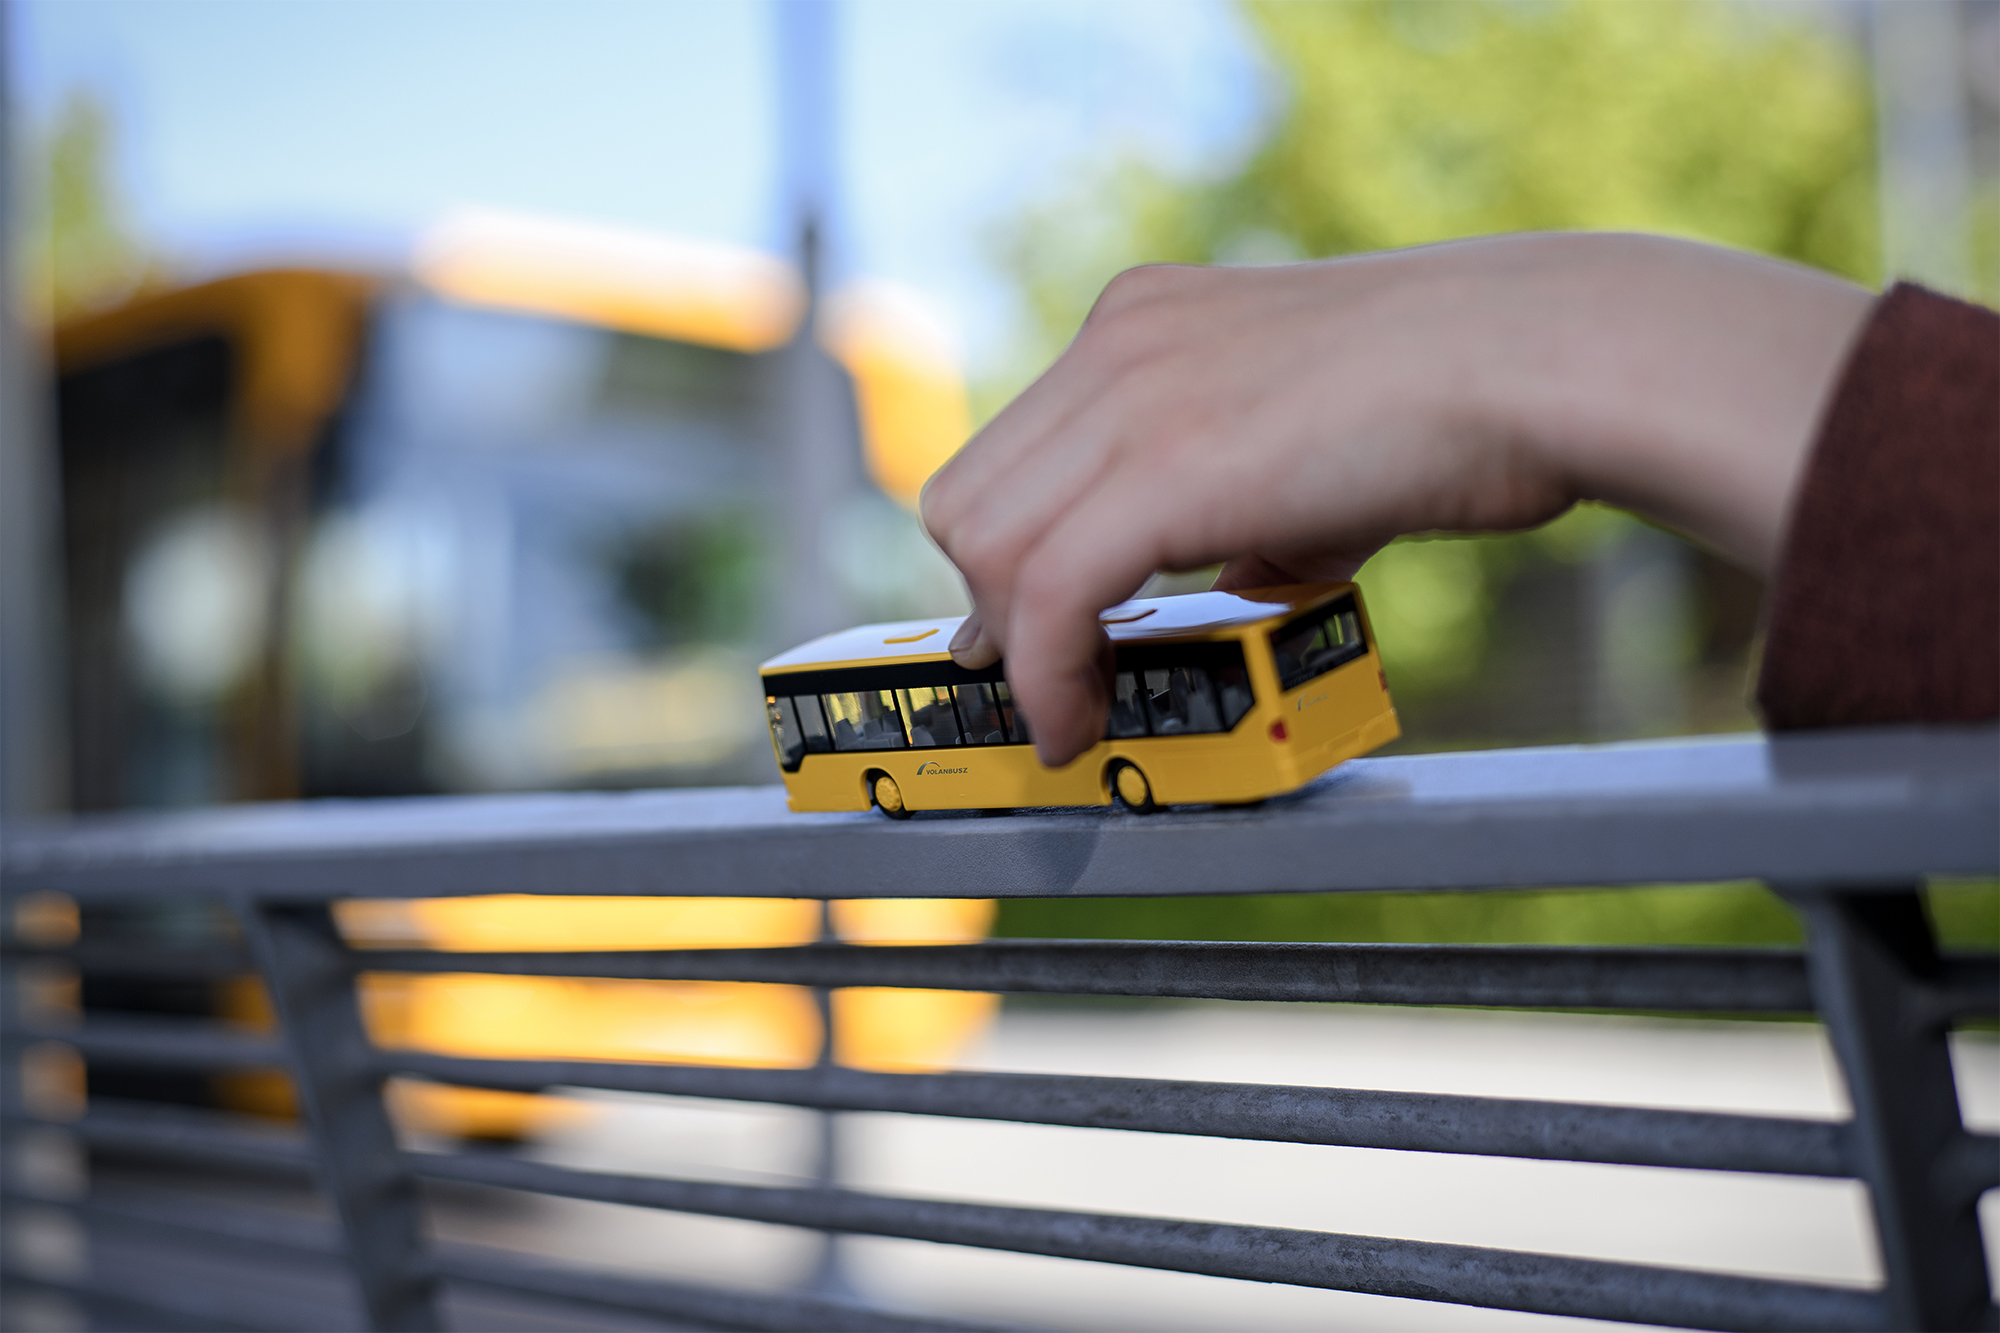 A képen egy gyermek kezében lévő játék autóbusz látható.